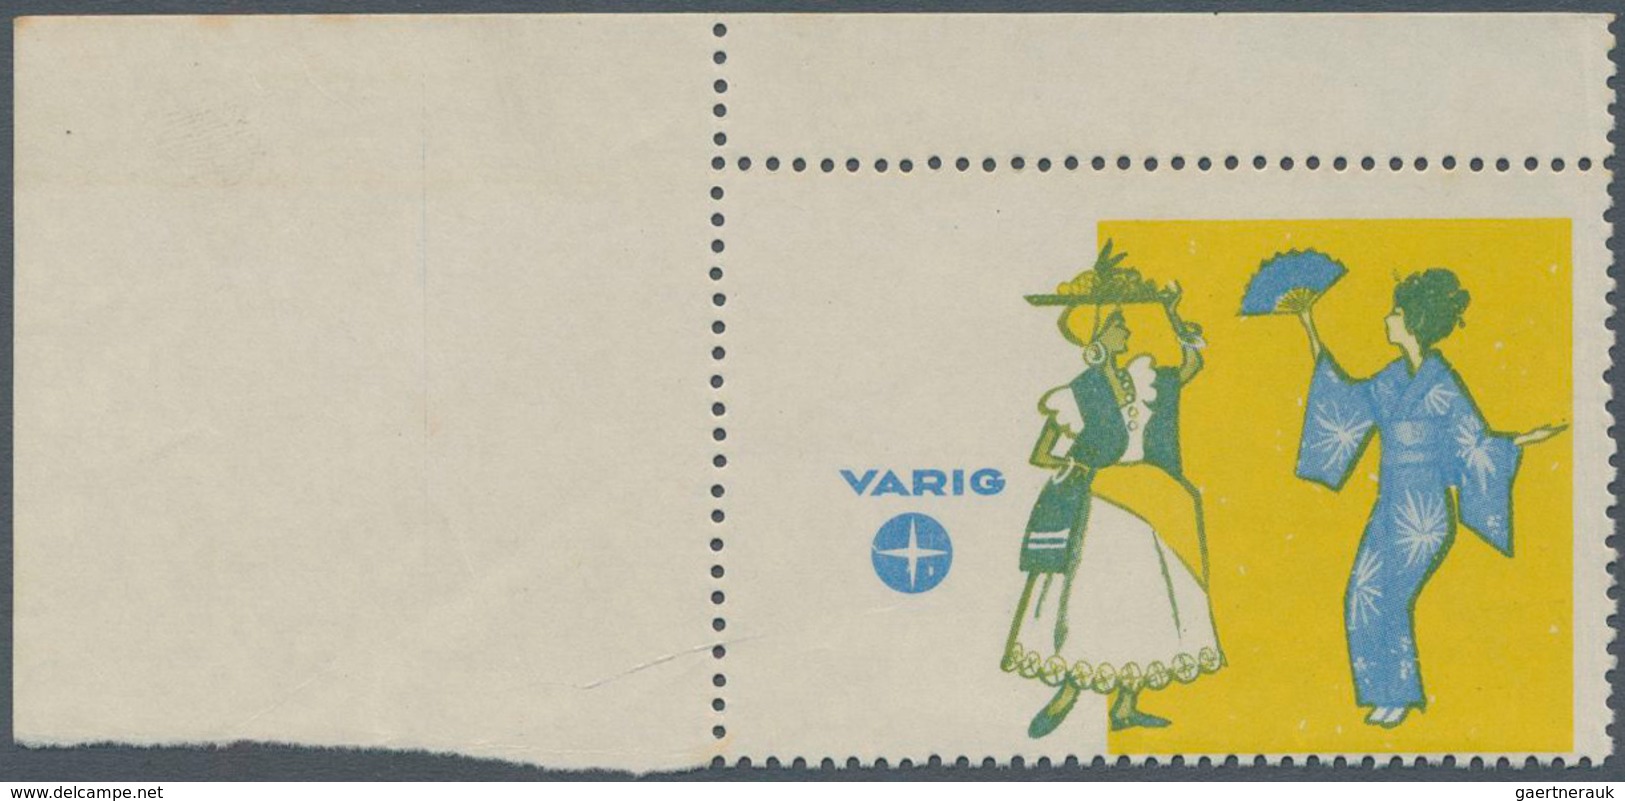 11781 Brasilien - Privatflugmarken Varig: VARIG Air Mail Stamp Missing Print Frame And Value, Corner Margi - Posta Aerea (società Private)